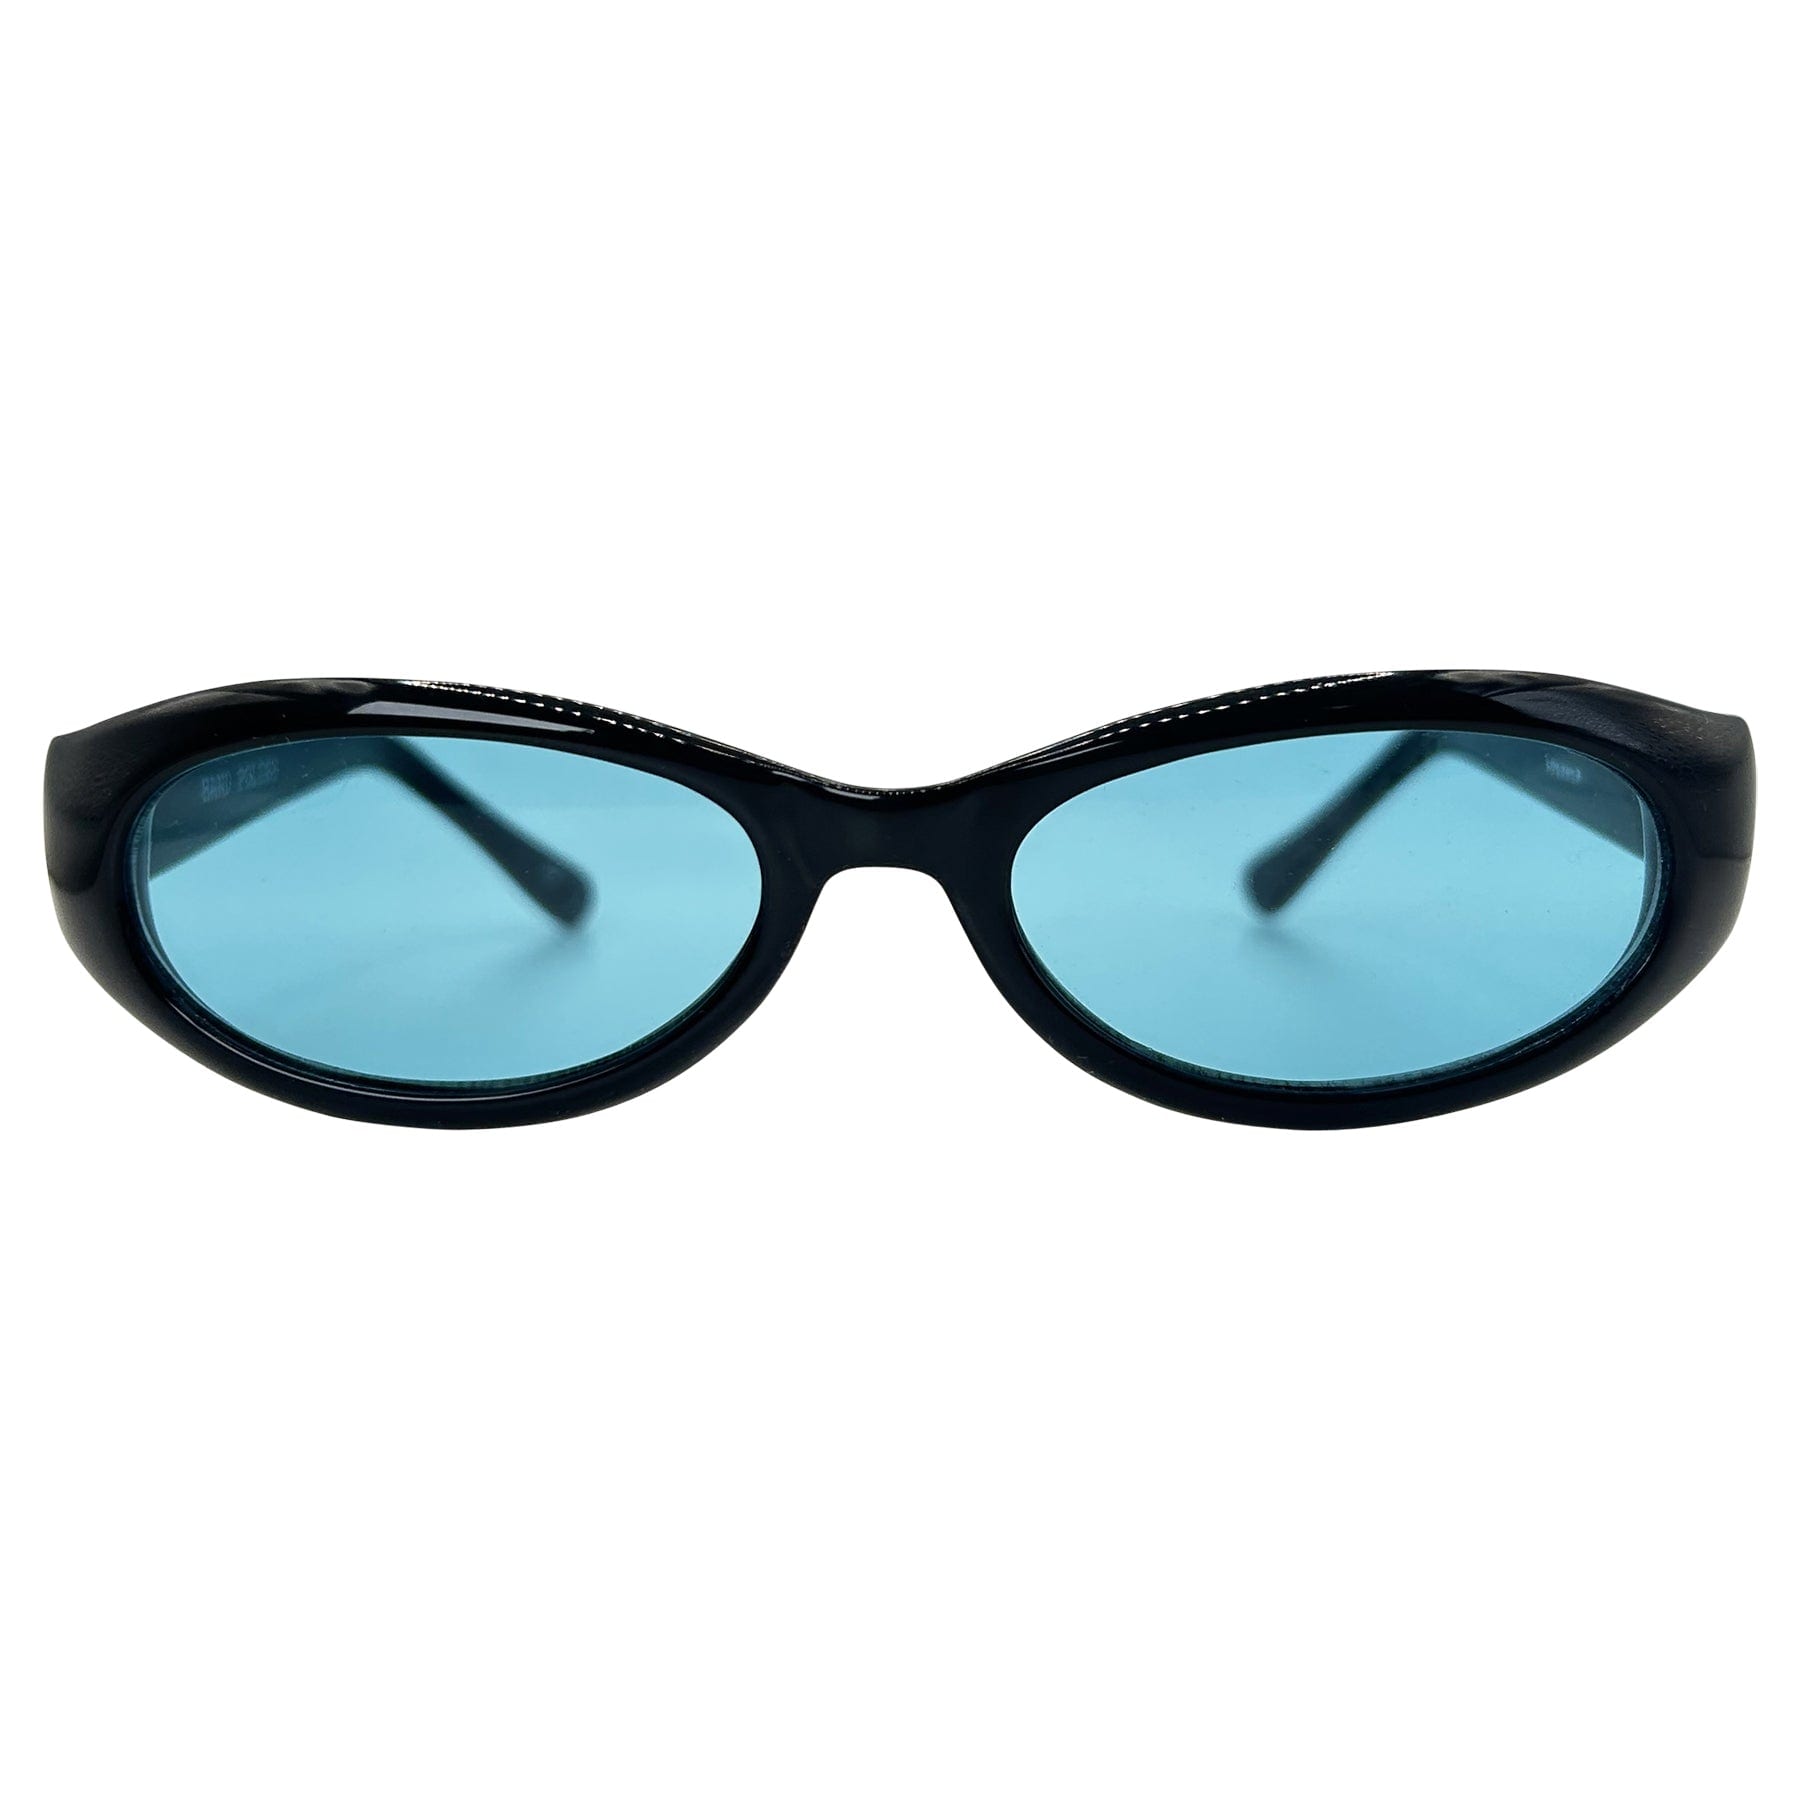 90s sport sunglasses with a aqua lens